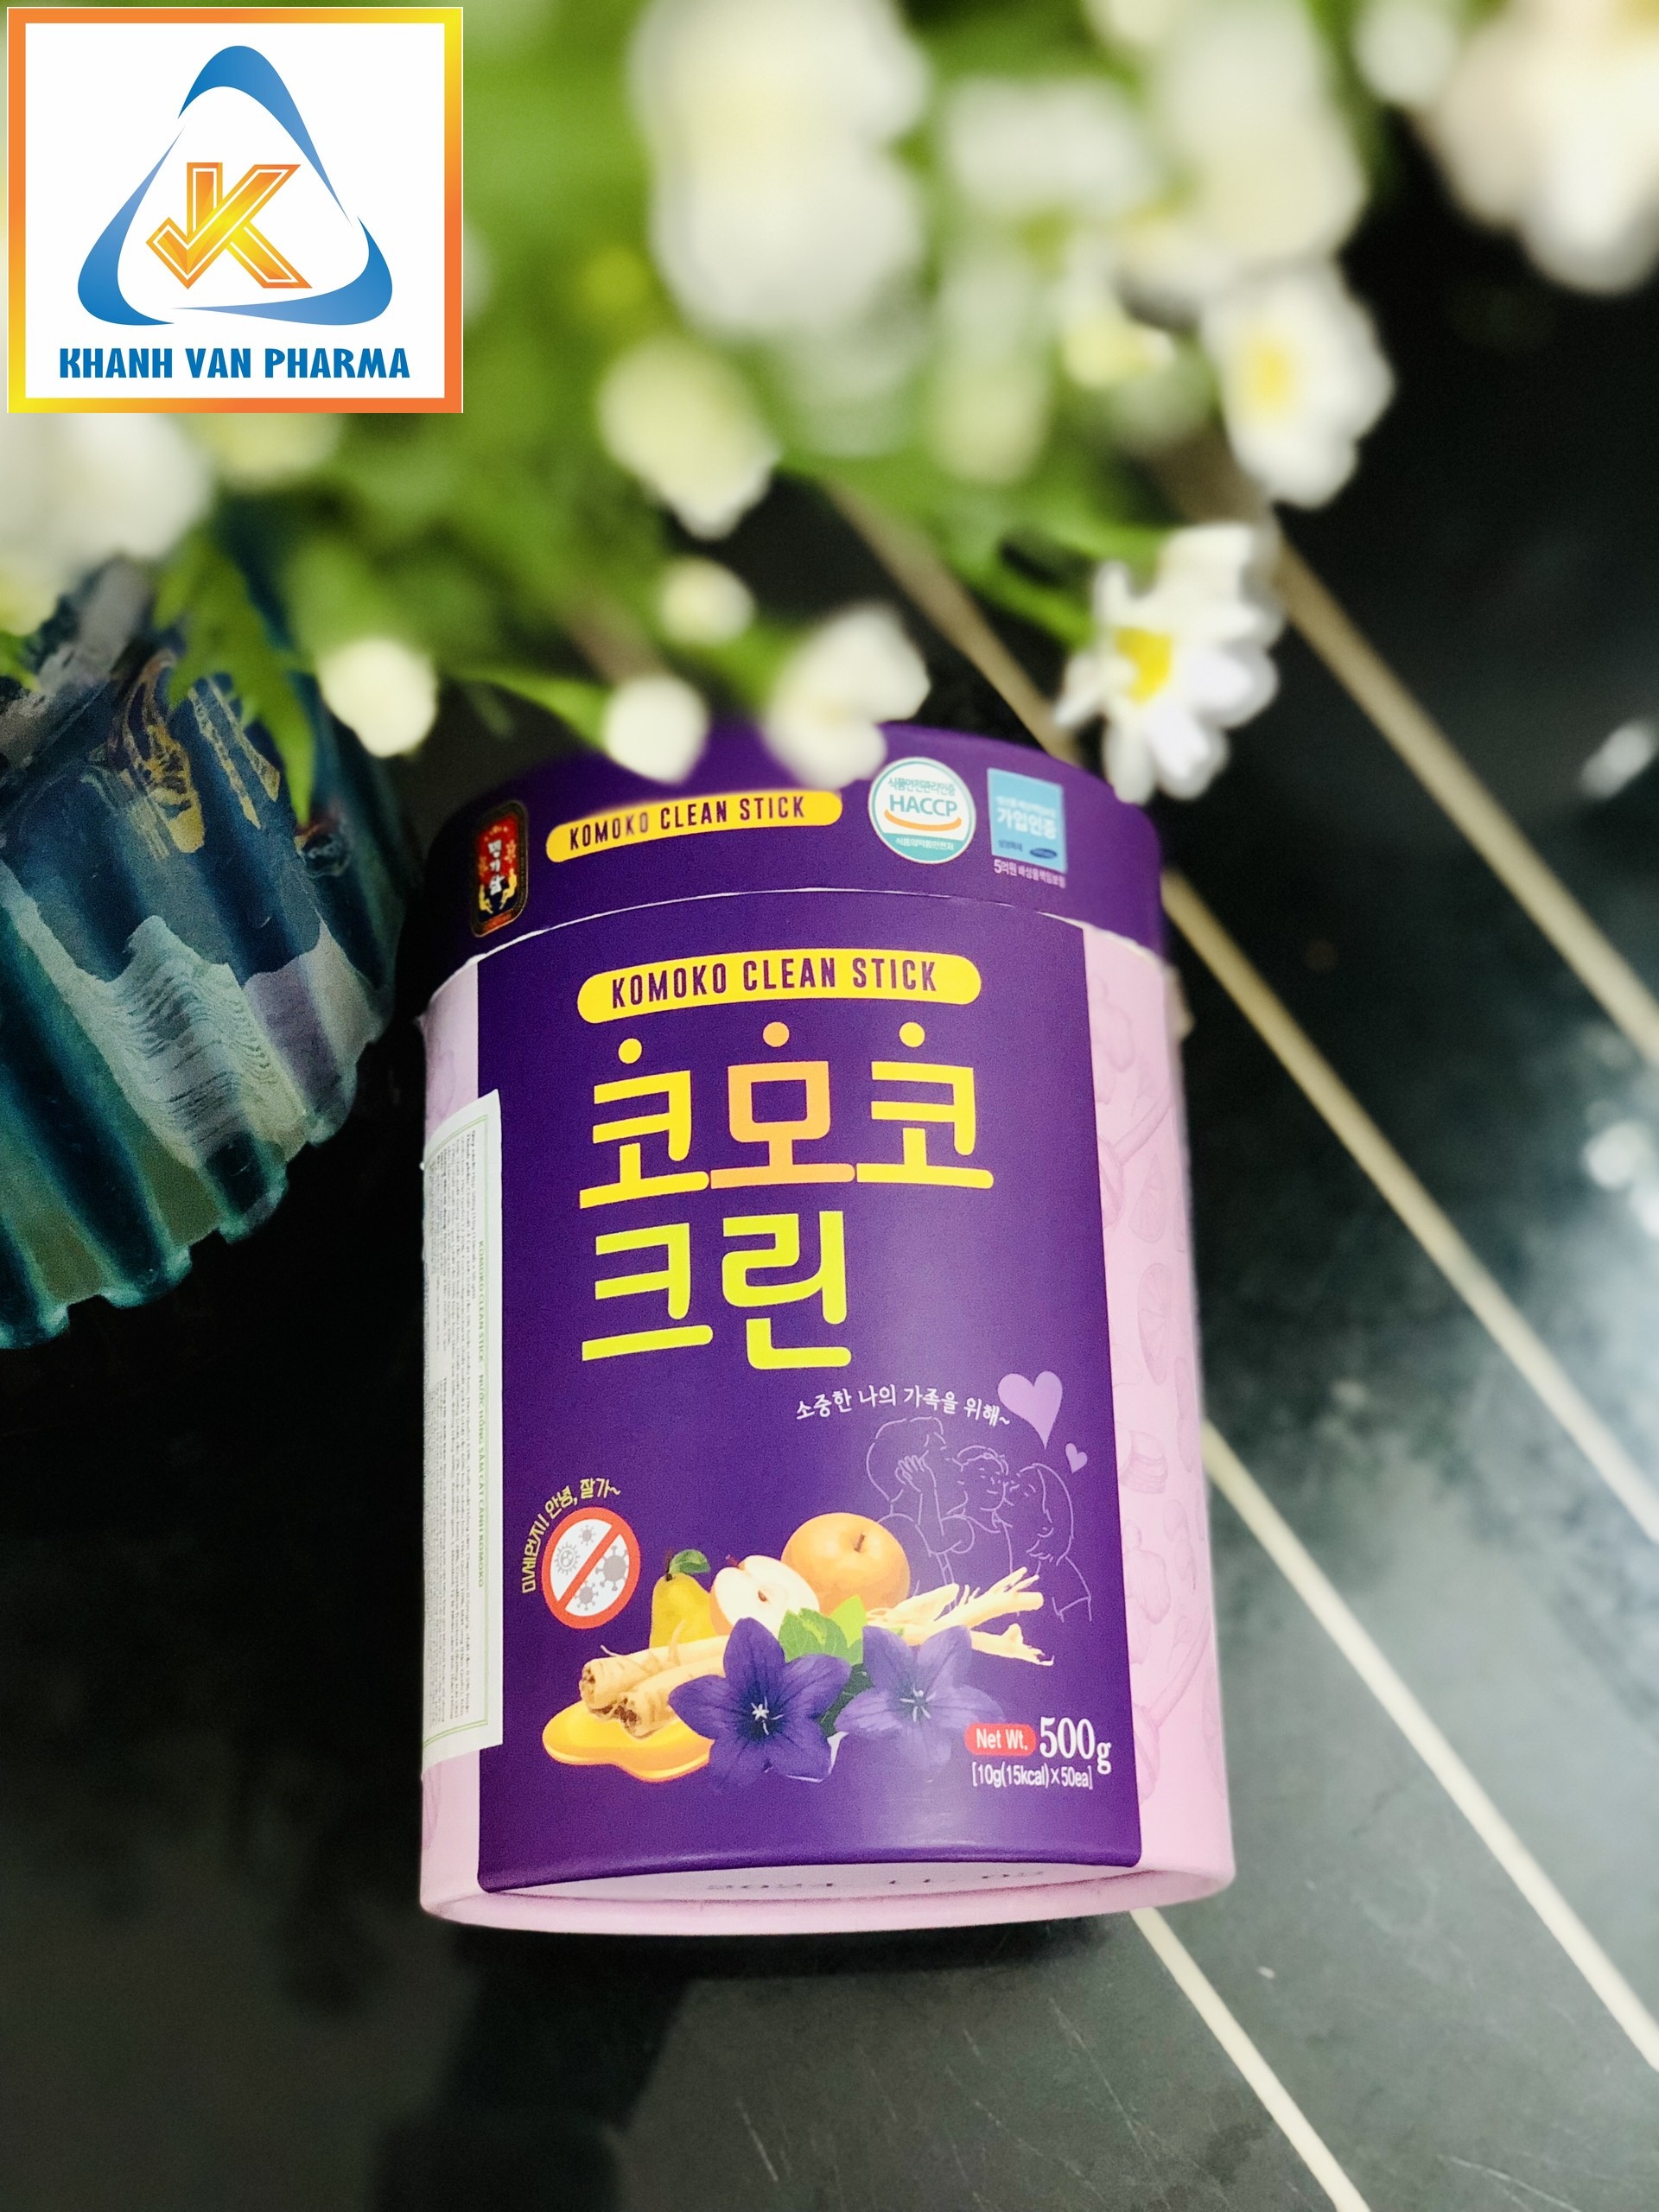 Nước Hồng Sâm Cát Cánh Komoko Hàn Quốc - Komoko Clean Stick - MYEONG KI SAM - Bảo vệ đường hô hấp - Hộp (500g) 50 gói x 10g - hàng nội địa, nhập khẩu chính ngạch